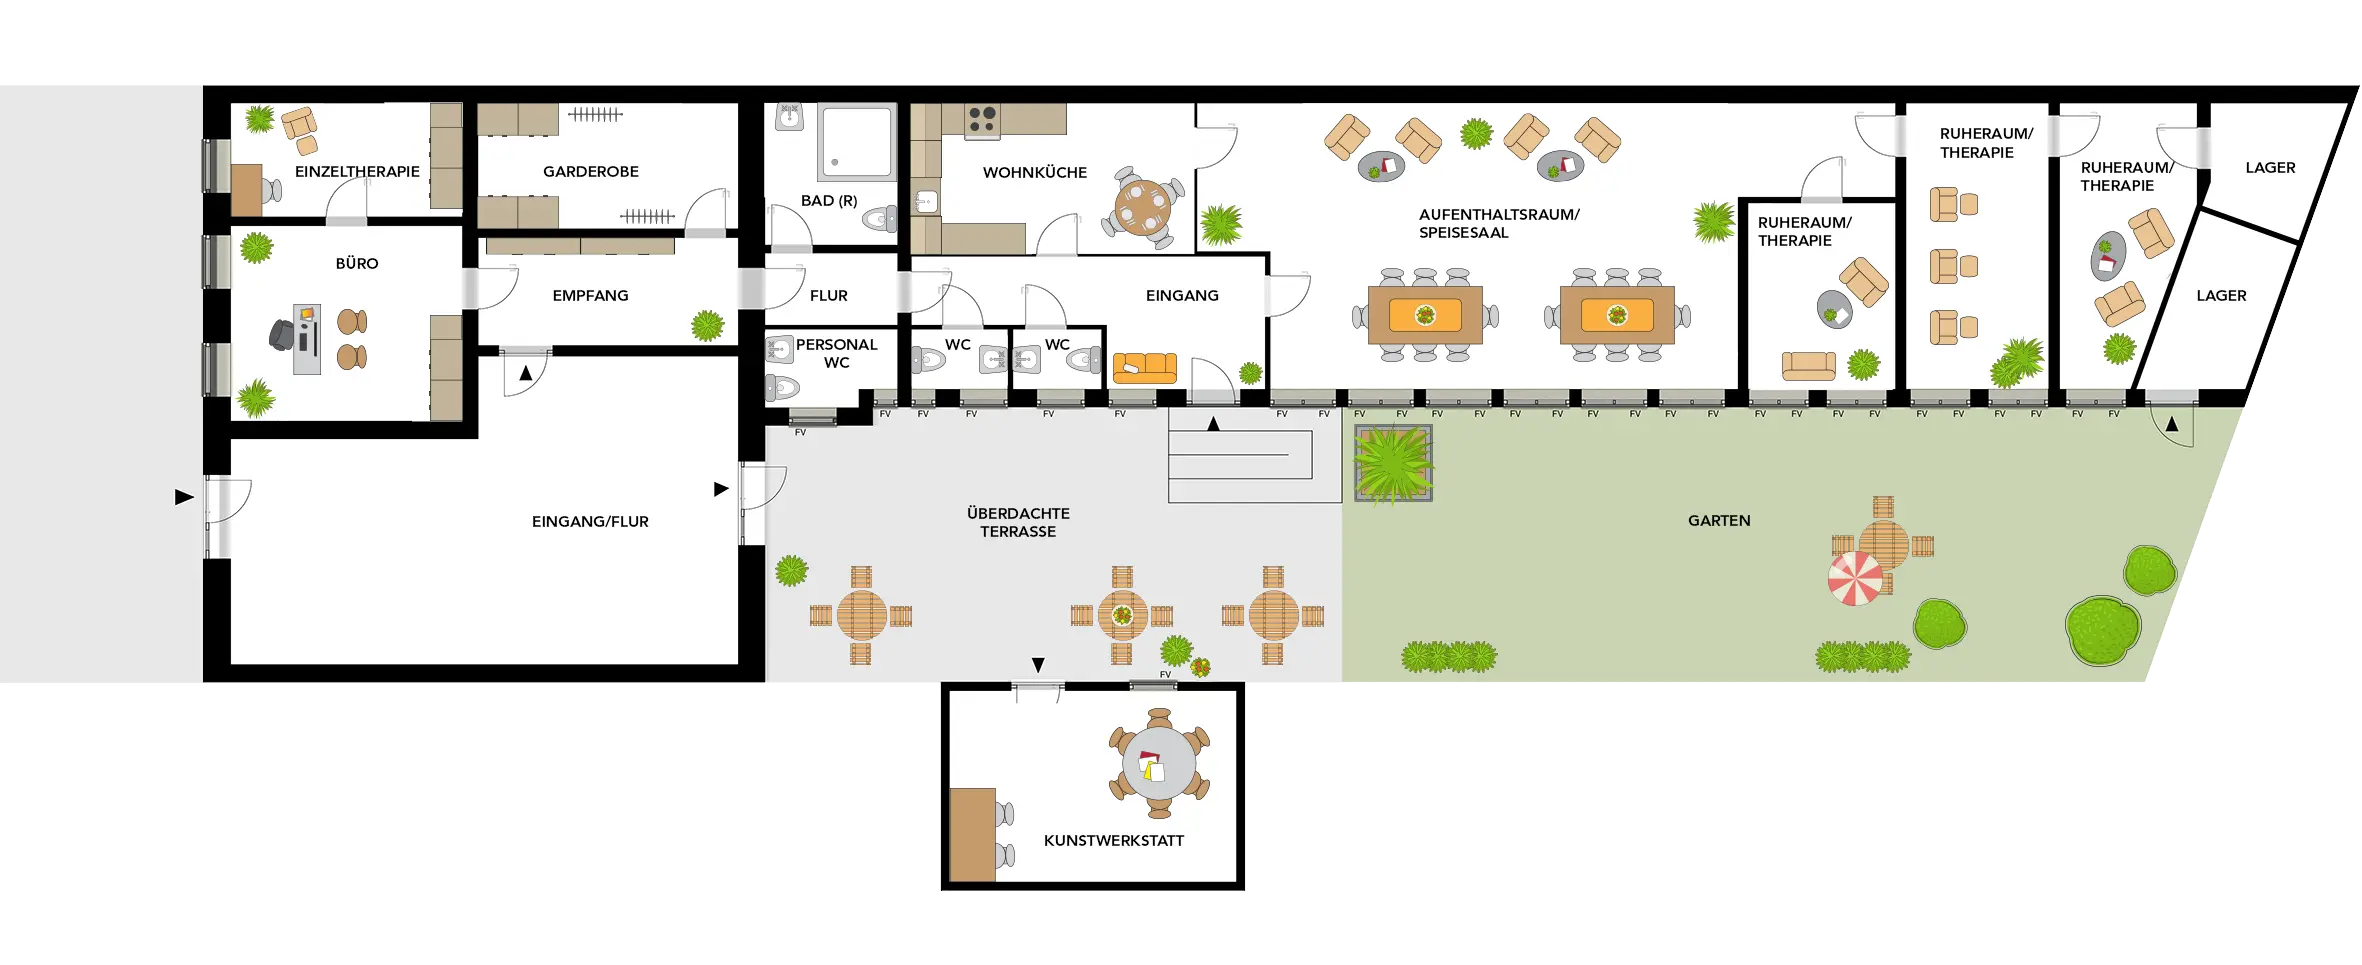 Das Bild zeigt den Grundriss mit verschiedenen Räumlichkeiten der Betreuungsstuben Fürth sowie einer überdachten Terrasse mit anschließendem Garten.